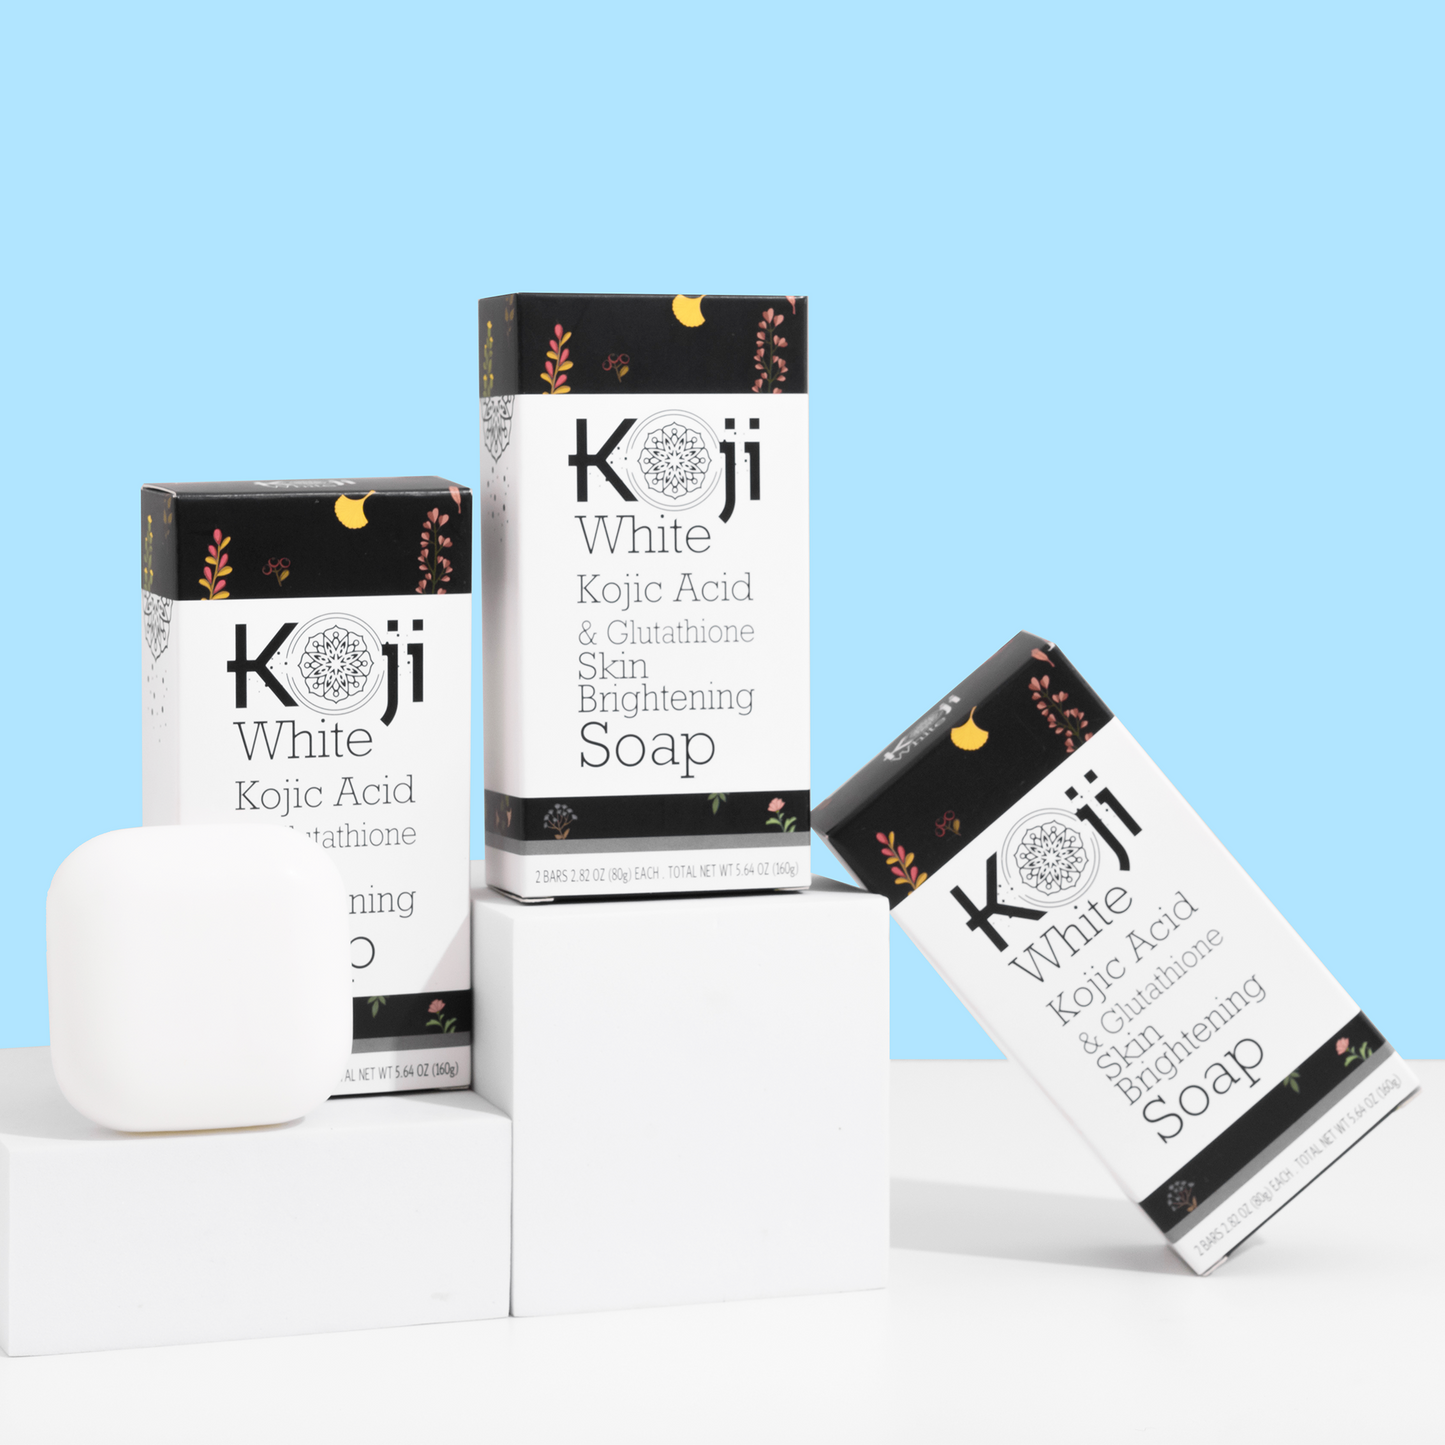 Kojic Acid & Glutathione Skin Brightening Soap